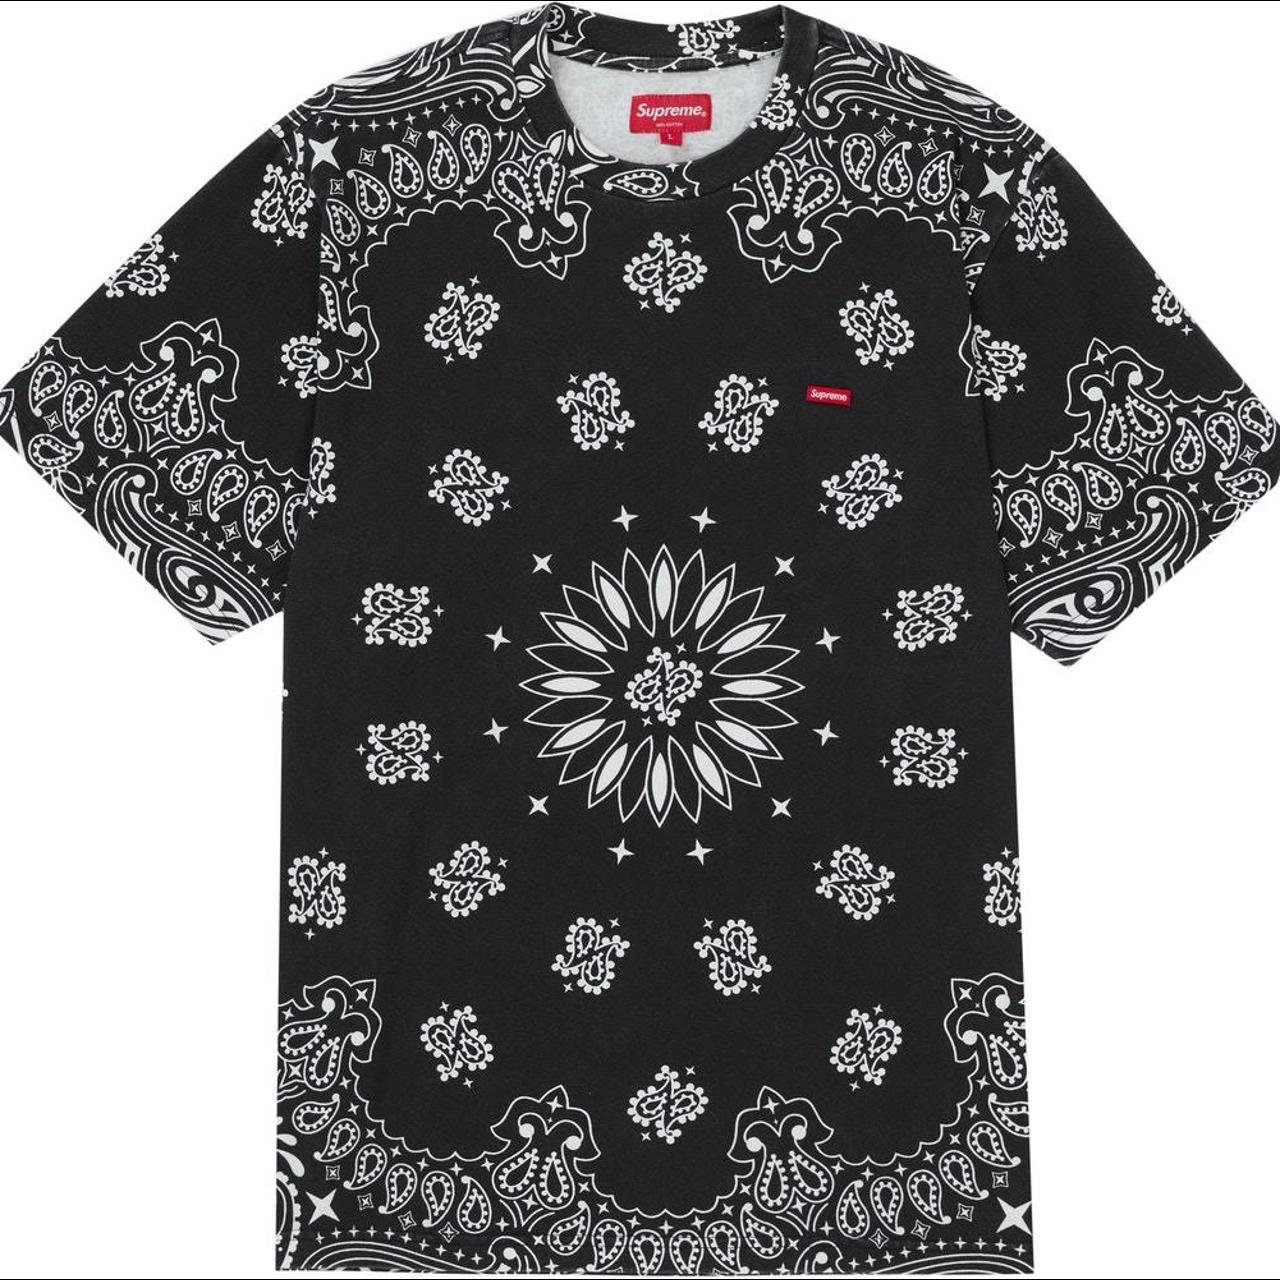 Tシャツ/カットソー(半袖/袖なし)XLサイズ Supreme Small Box Logo Tee